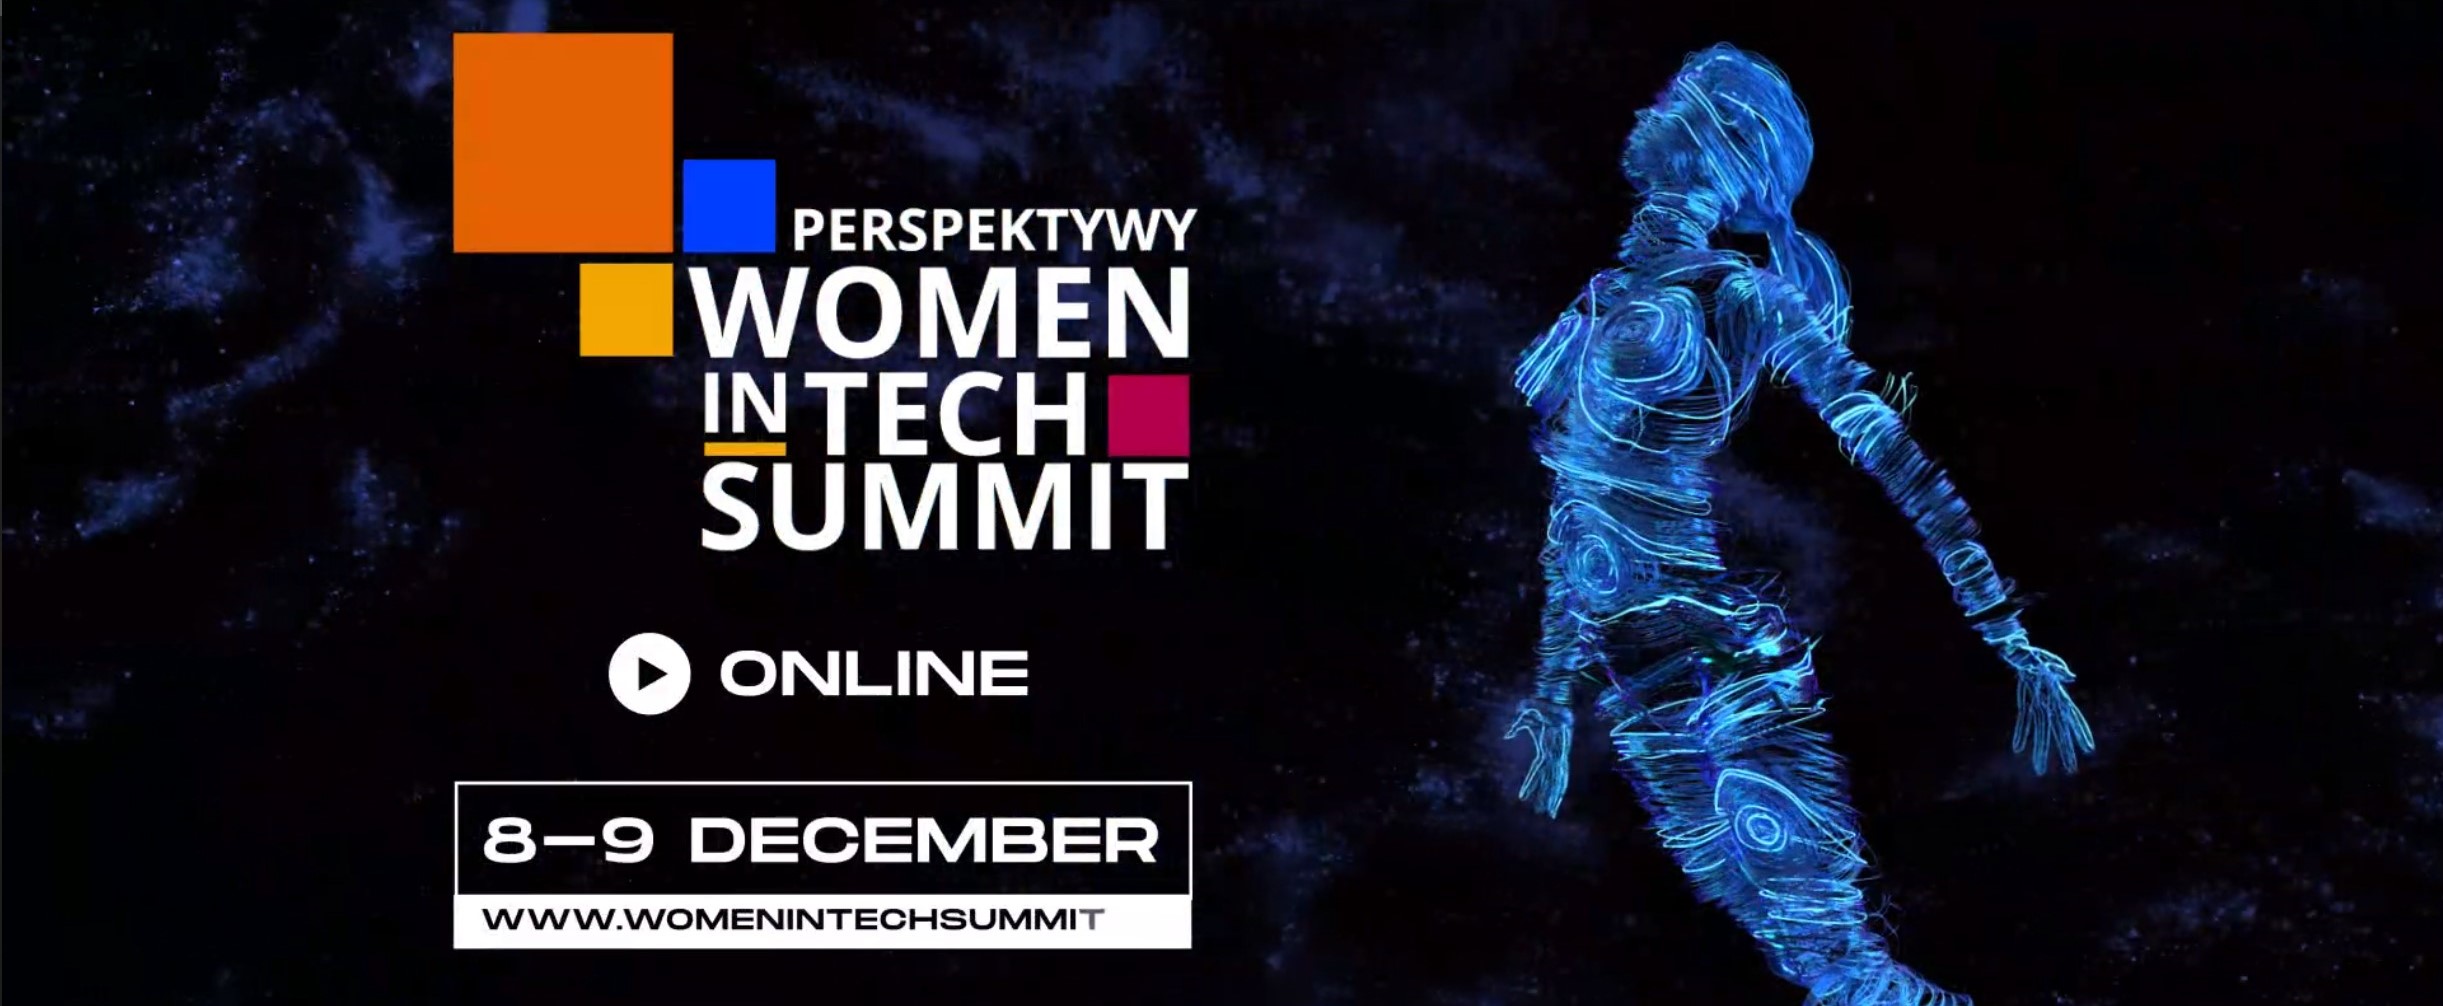 perspektywy-women-in-tech-summit-2020